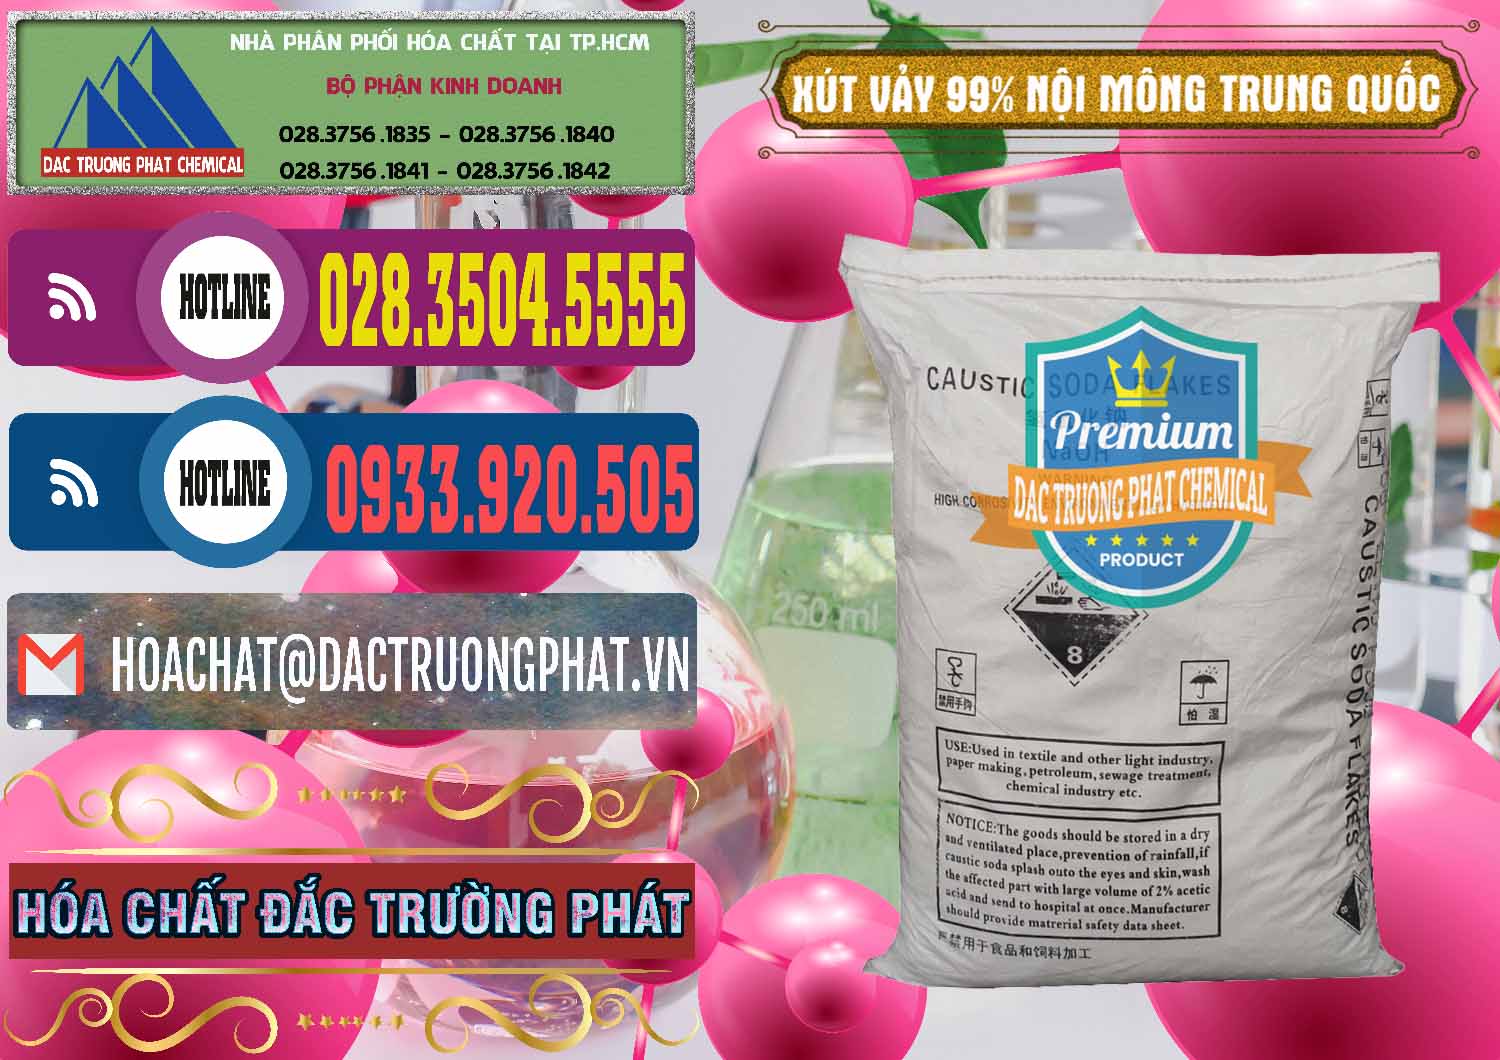 Cty chuyên bán - cung ứng Xút Vảy - NaOH Vảy 99% Nội Mông Trung Quốc China - 0228 - Cty phân phối ( bán ) hóa chất tại TP.HCM - muabanhoachat.com.vn